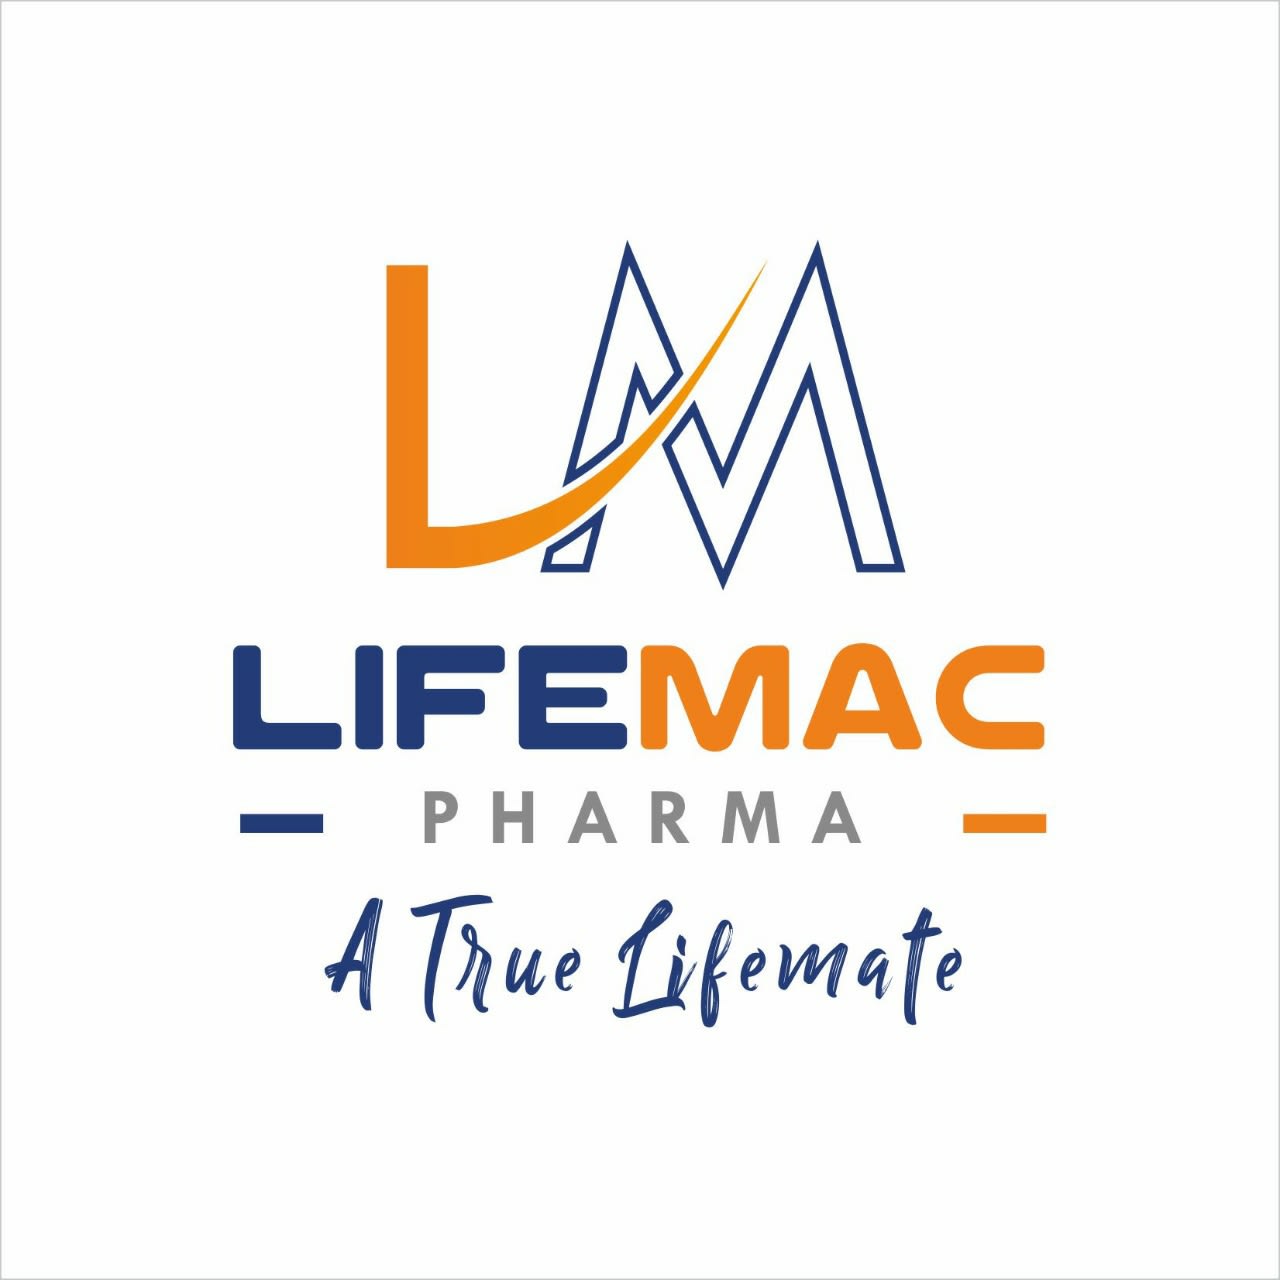 Lifemac Pharma